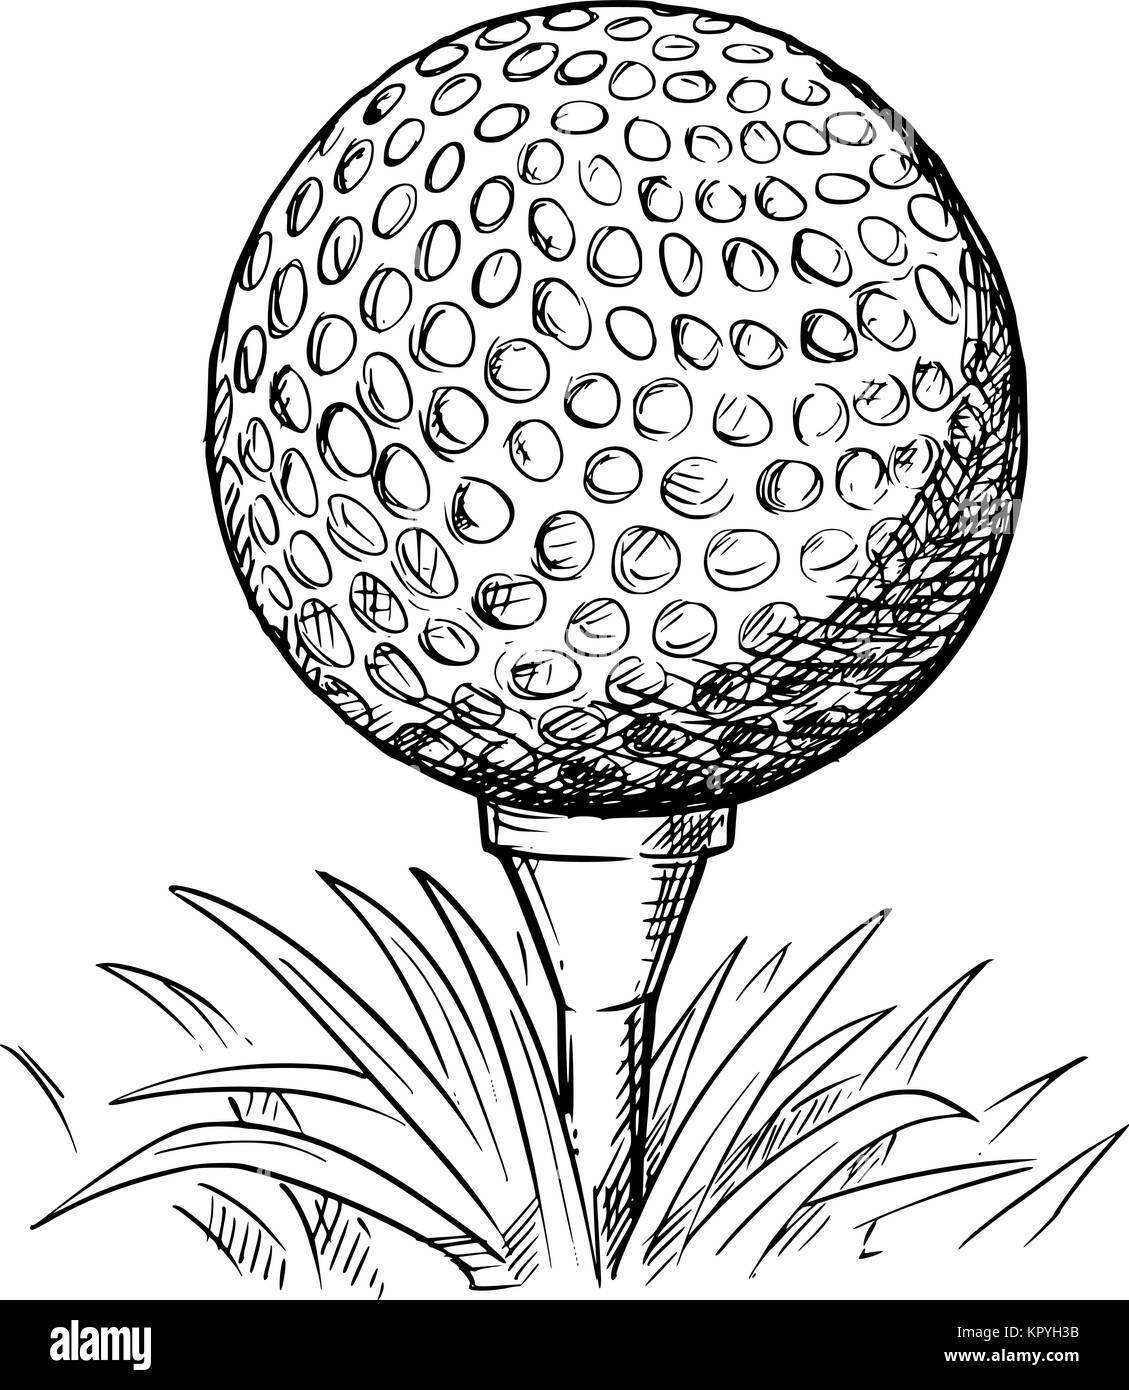 Vektor hand Zeichnung gezeichnet Abbildung: Golf Ball am T-Stück und Gras  Stock-Vektorgrafik - Alamy